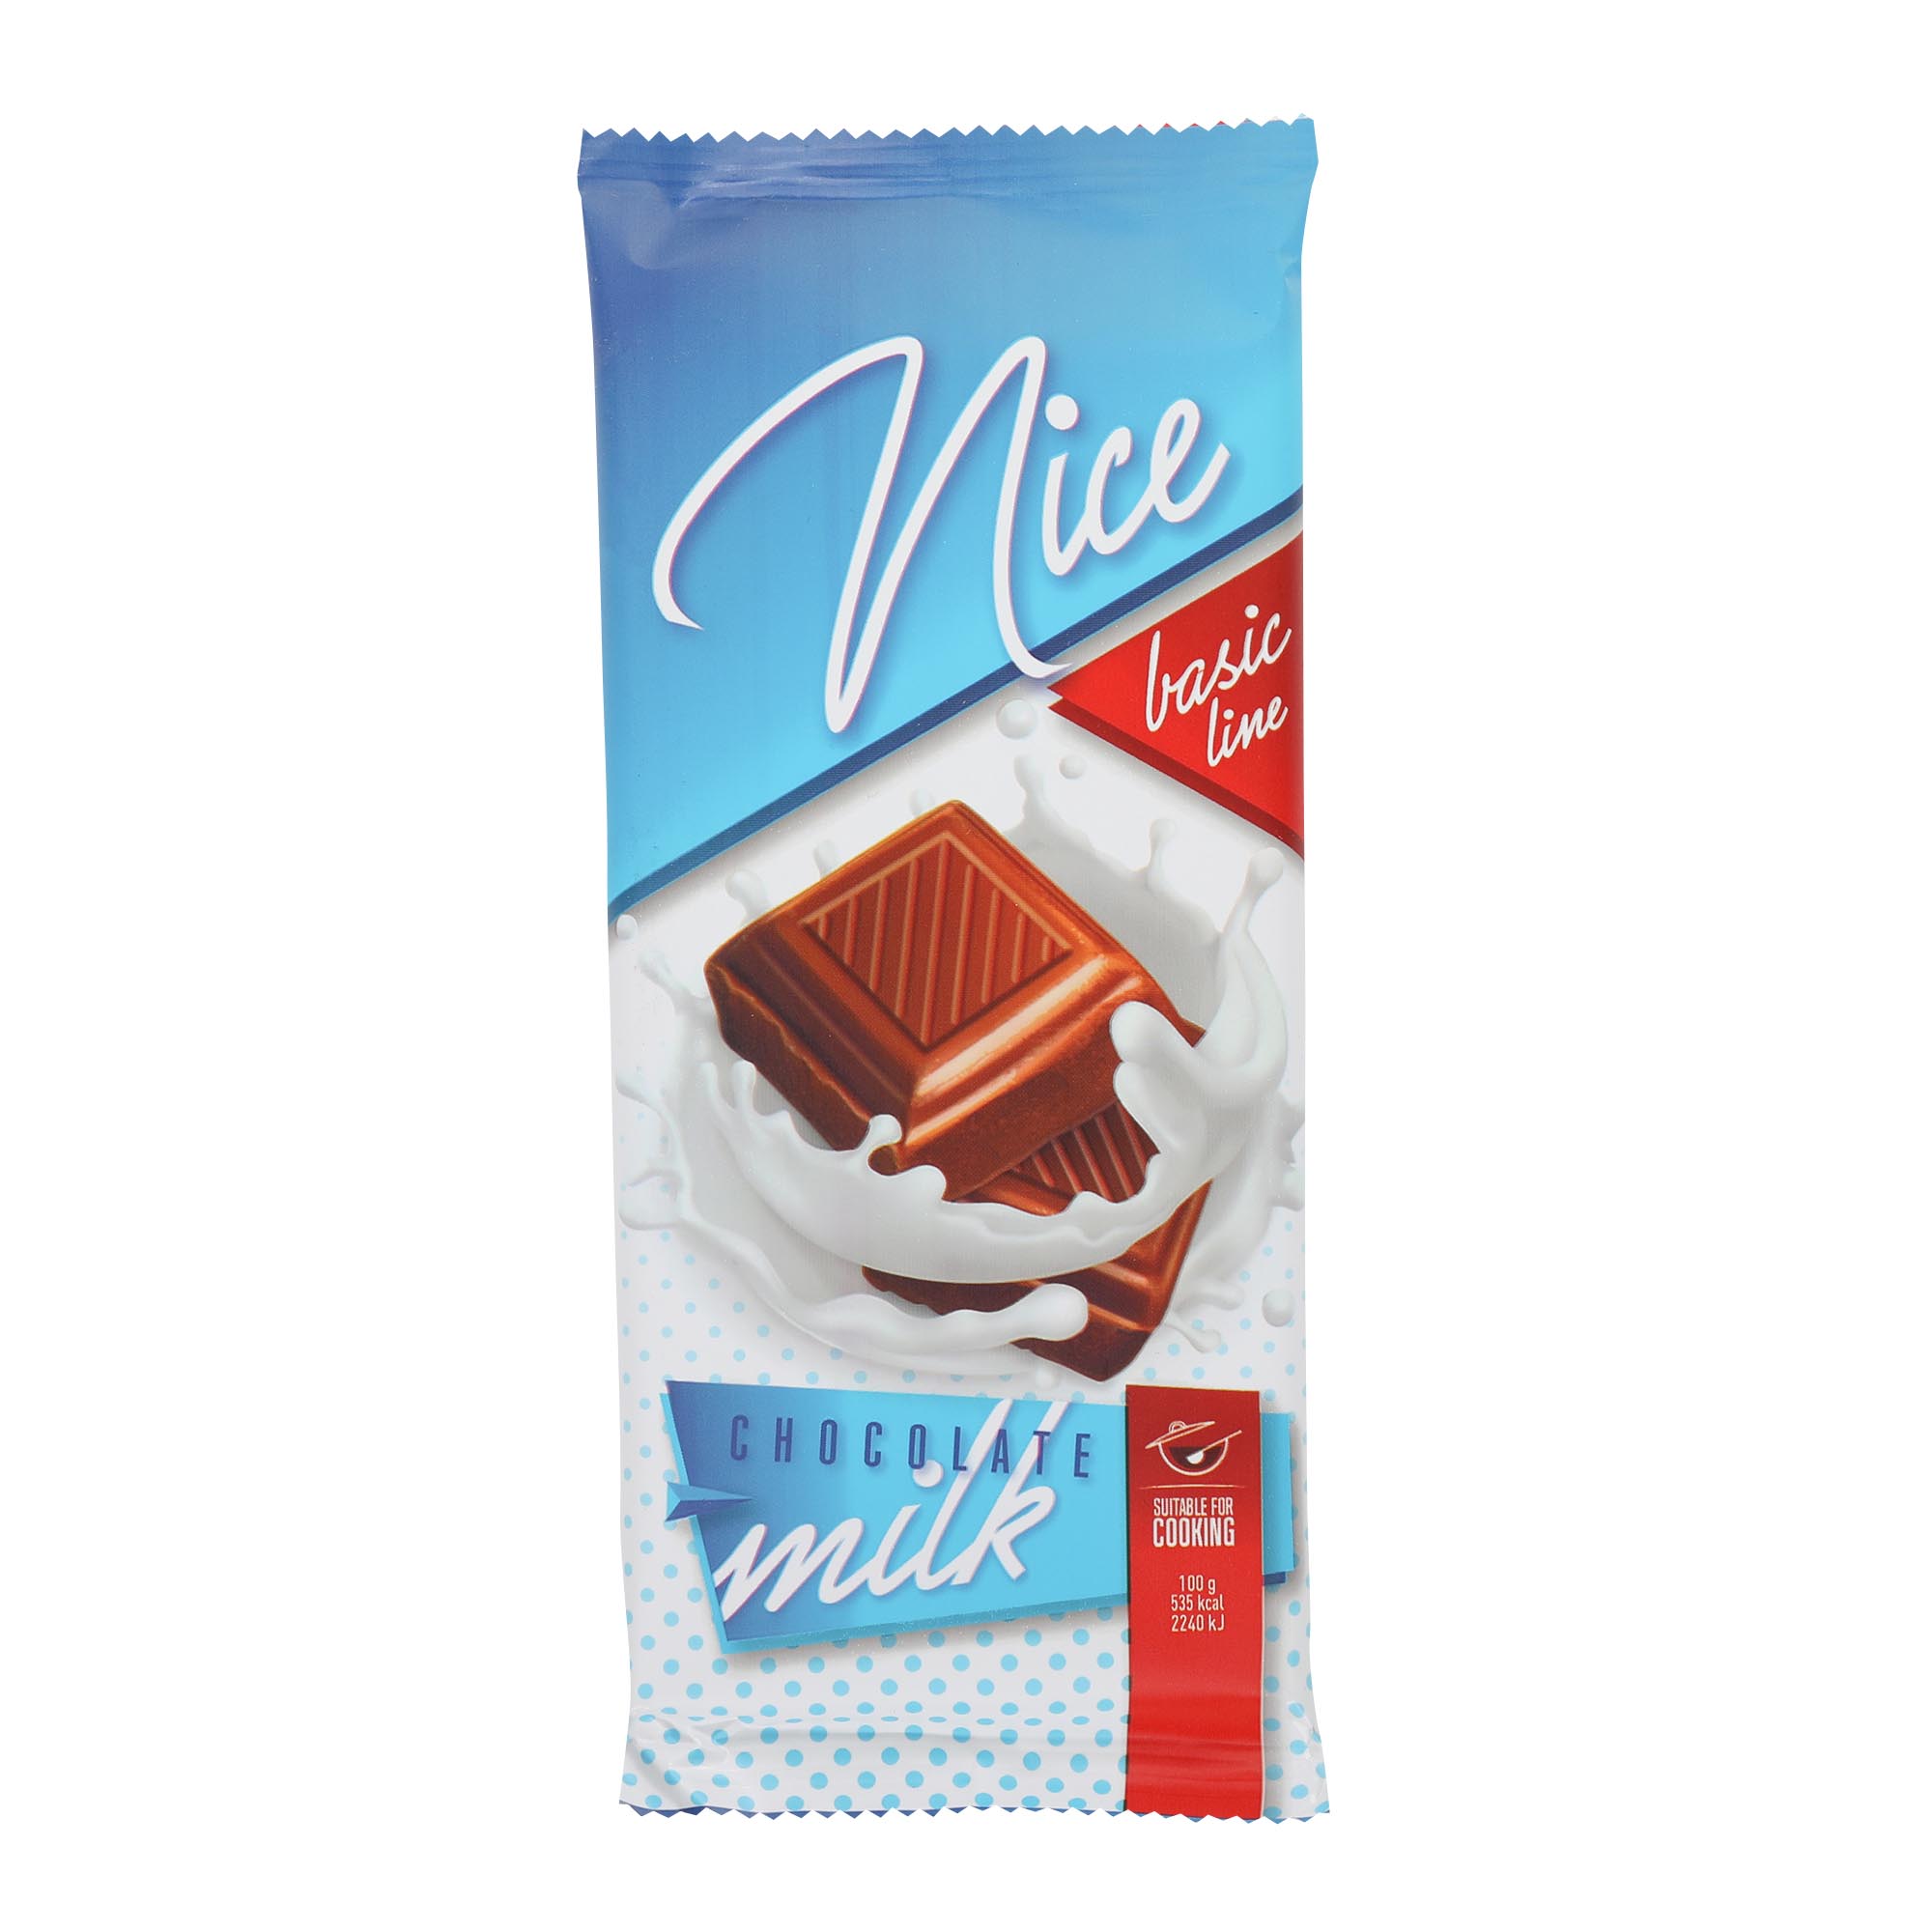 Шоколад молочный Chocomoco Nice 80 г шоколад молочный chocomoco nice 80 г